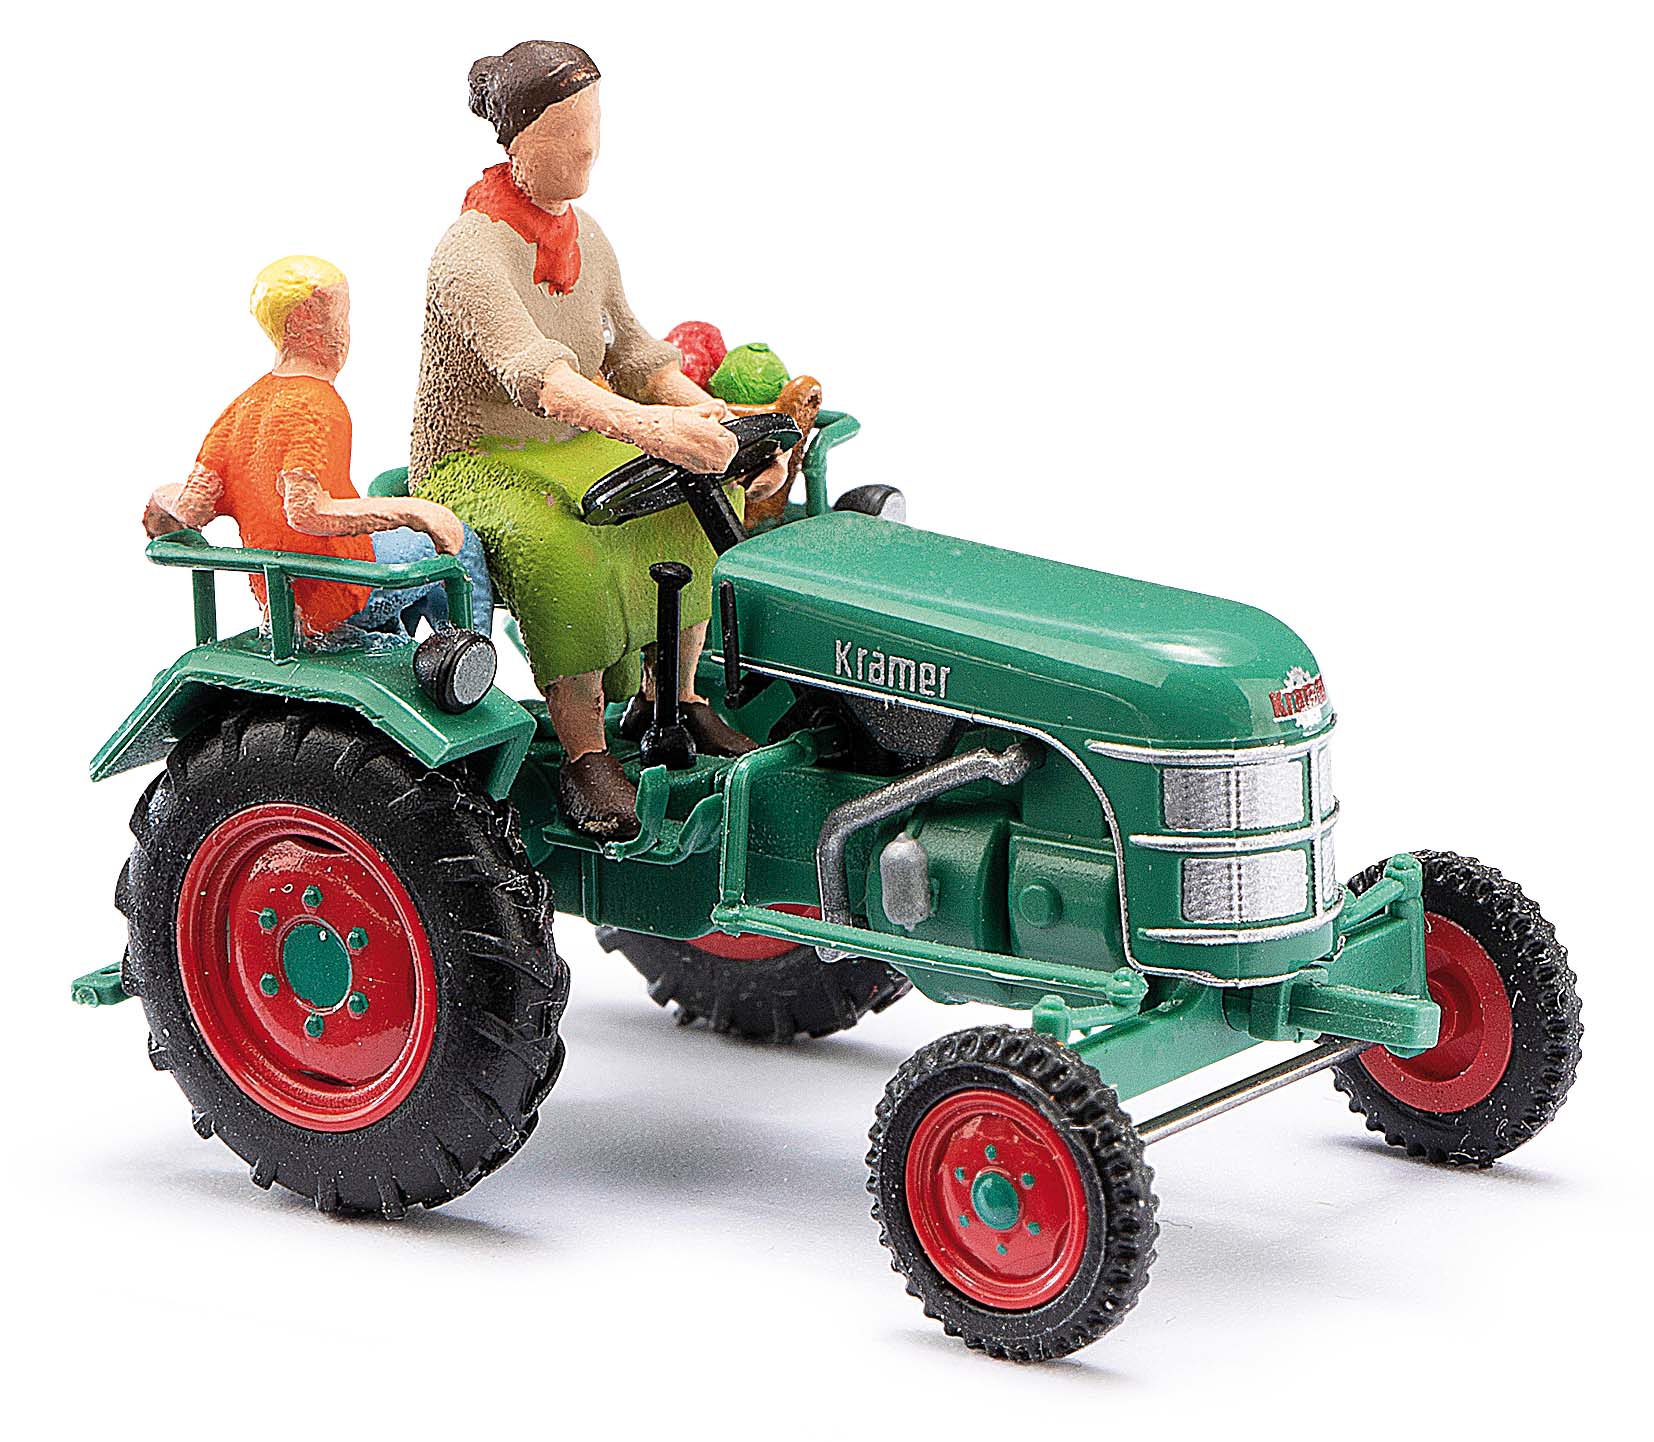 40071-Traktor Kramer KL11 mit Bäuerin und Kind-4001738400717